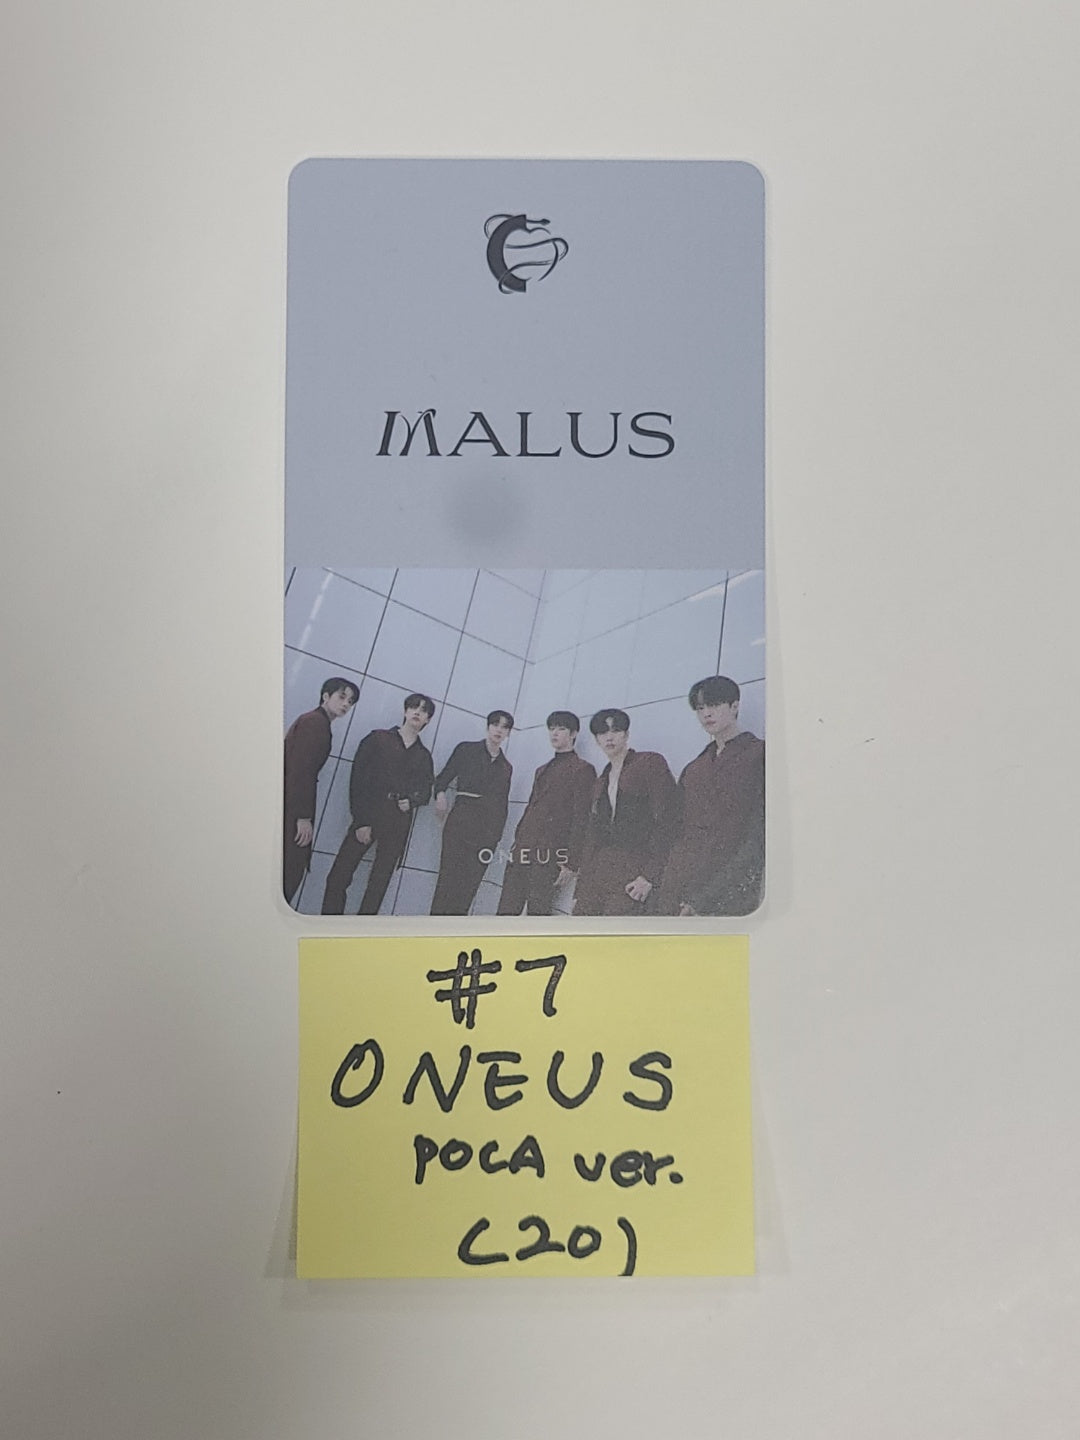 Oneus "MALUS"  - Official Photocard [POCA Ver]